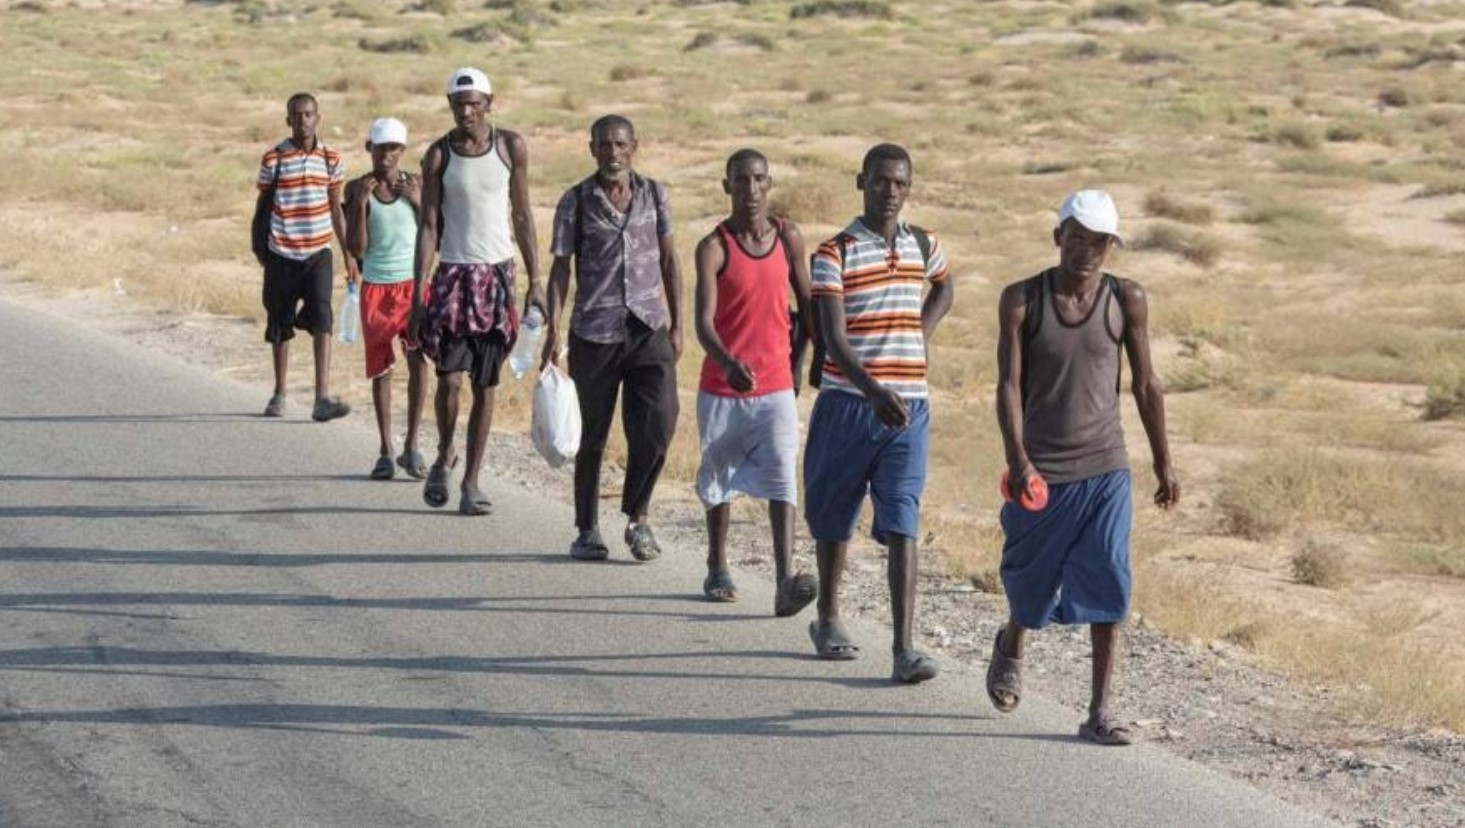 الحكومة الإثيوبية تفتح تحقيقاً مشتركاً مع السعودية بشأن حادثة مقتل المهاجرين الإثيوبيين